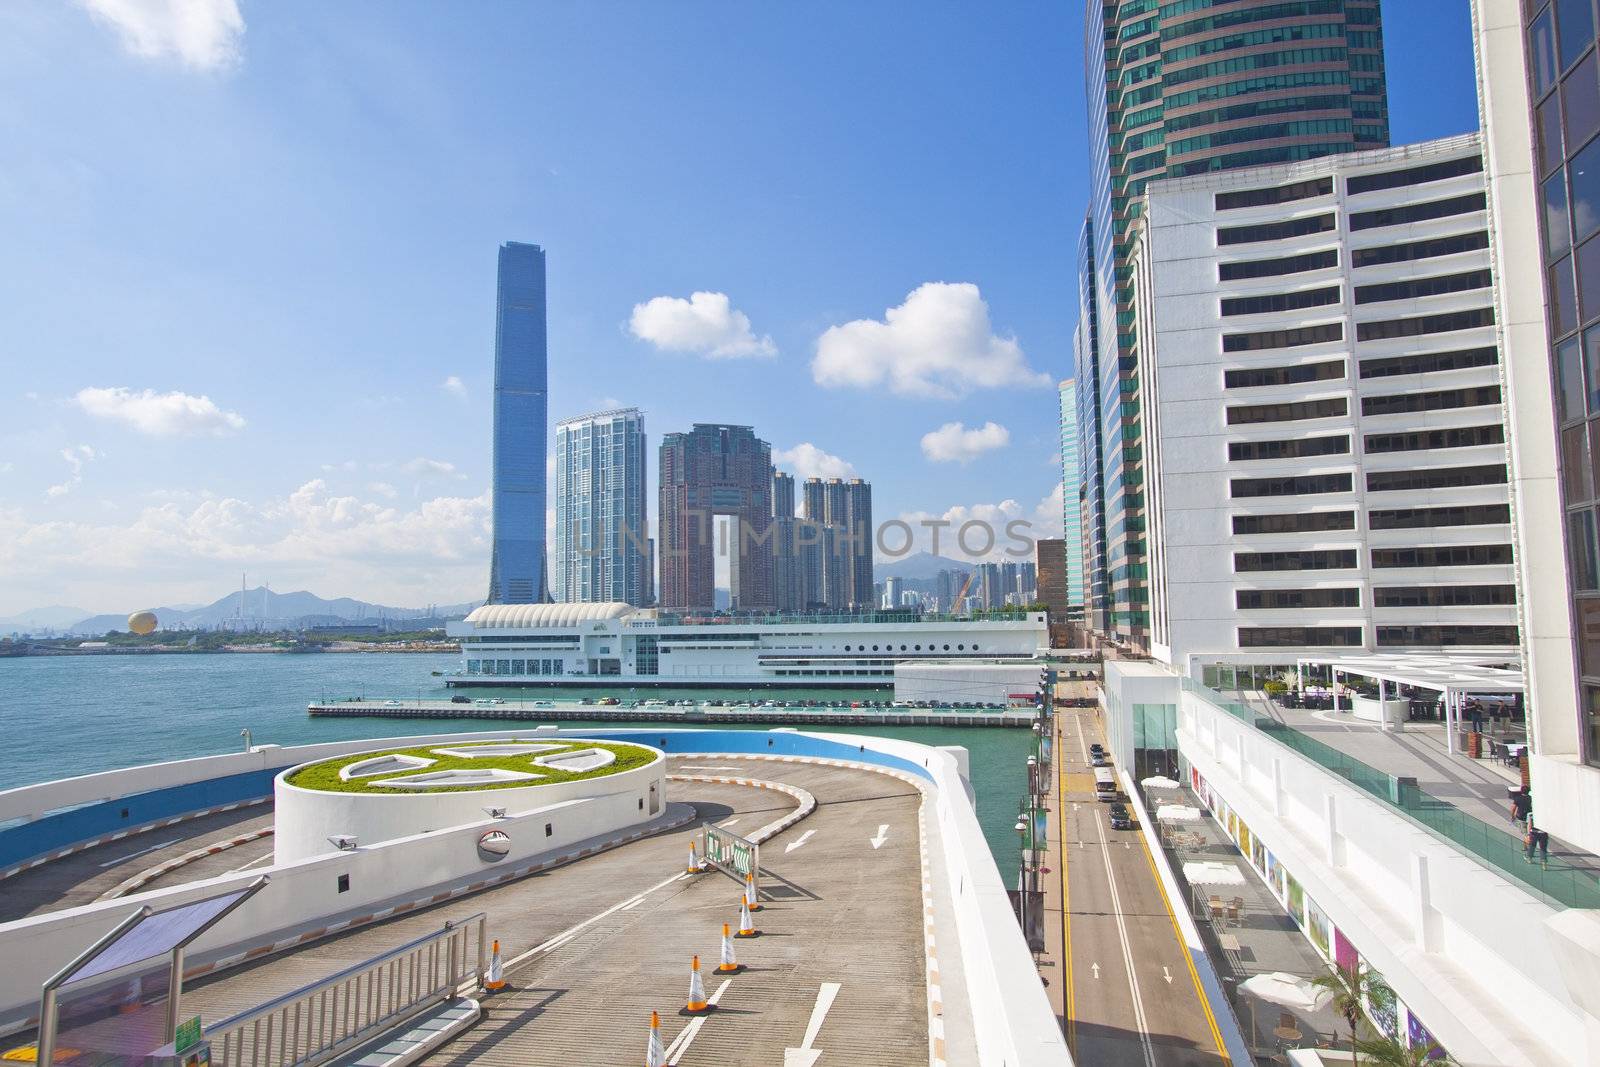 Hong Kong skyline at day by kawing921